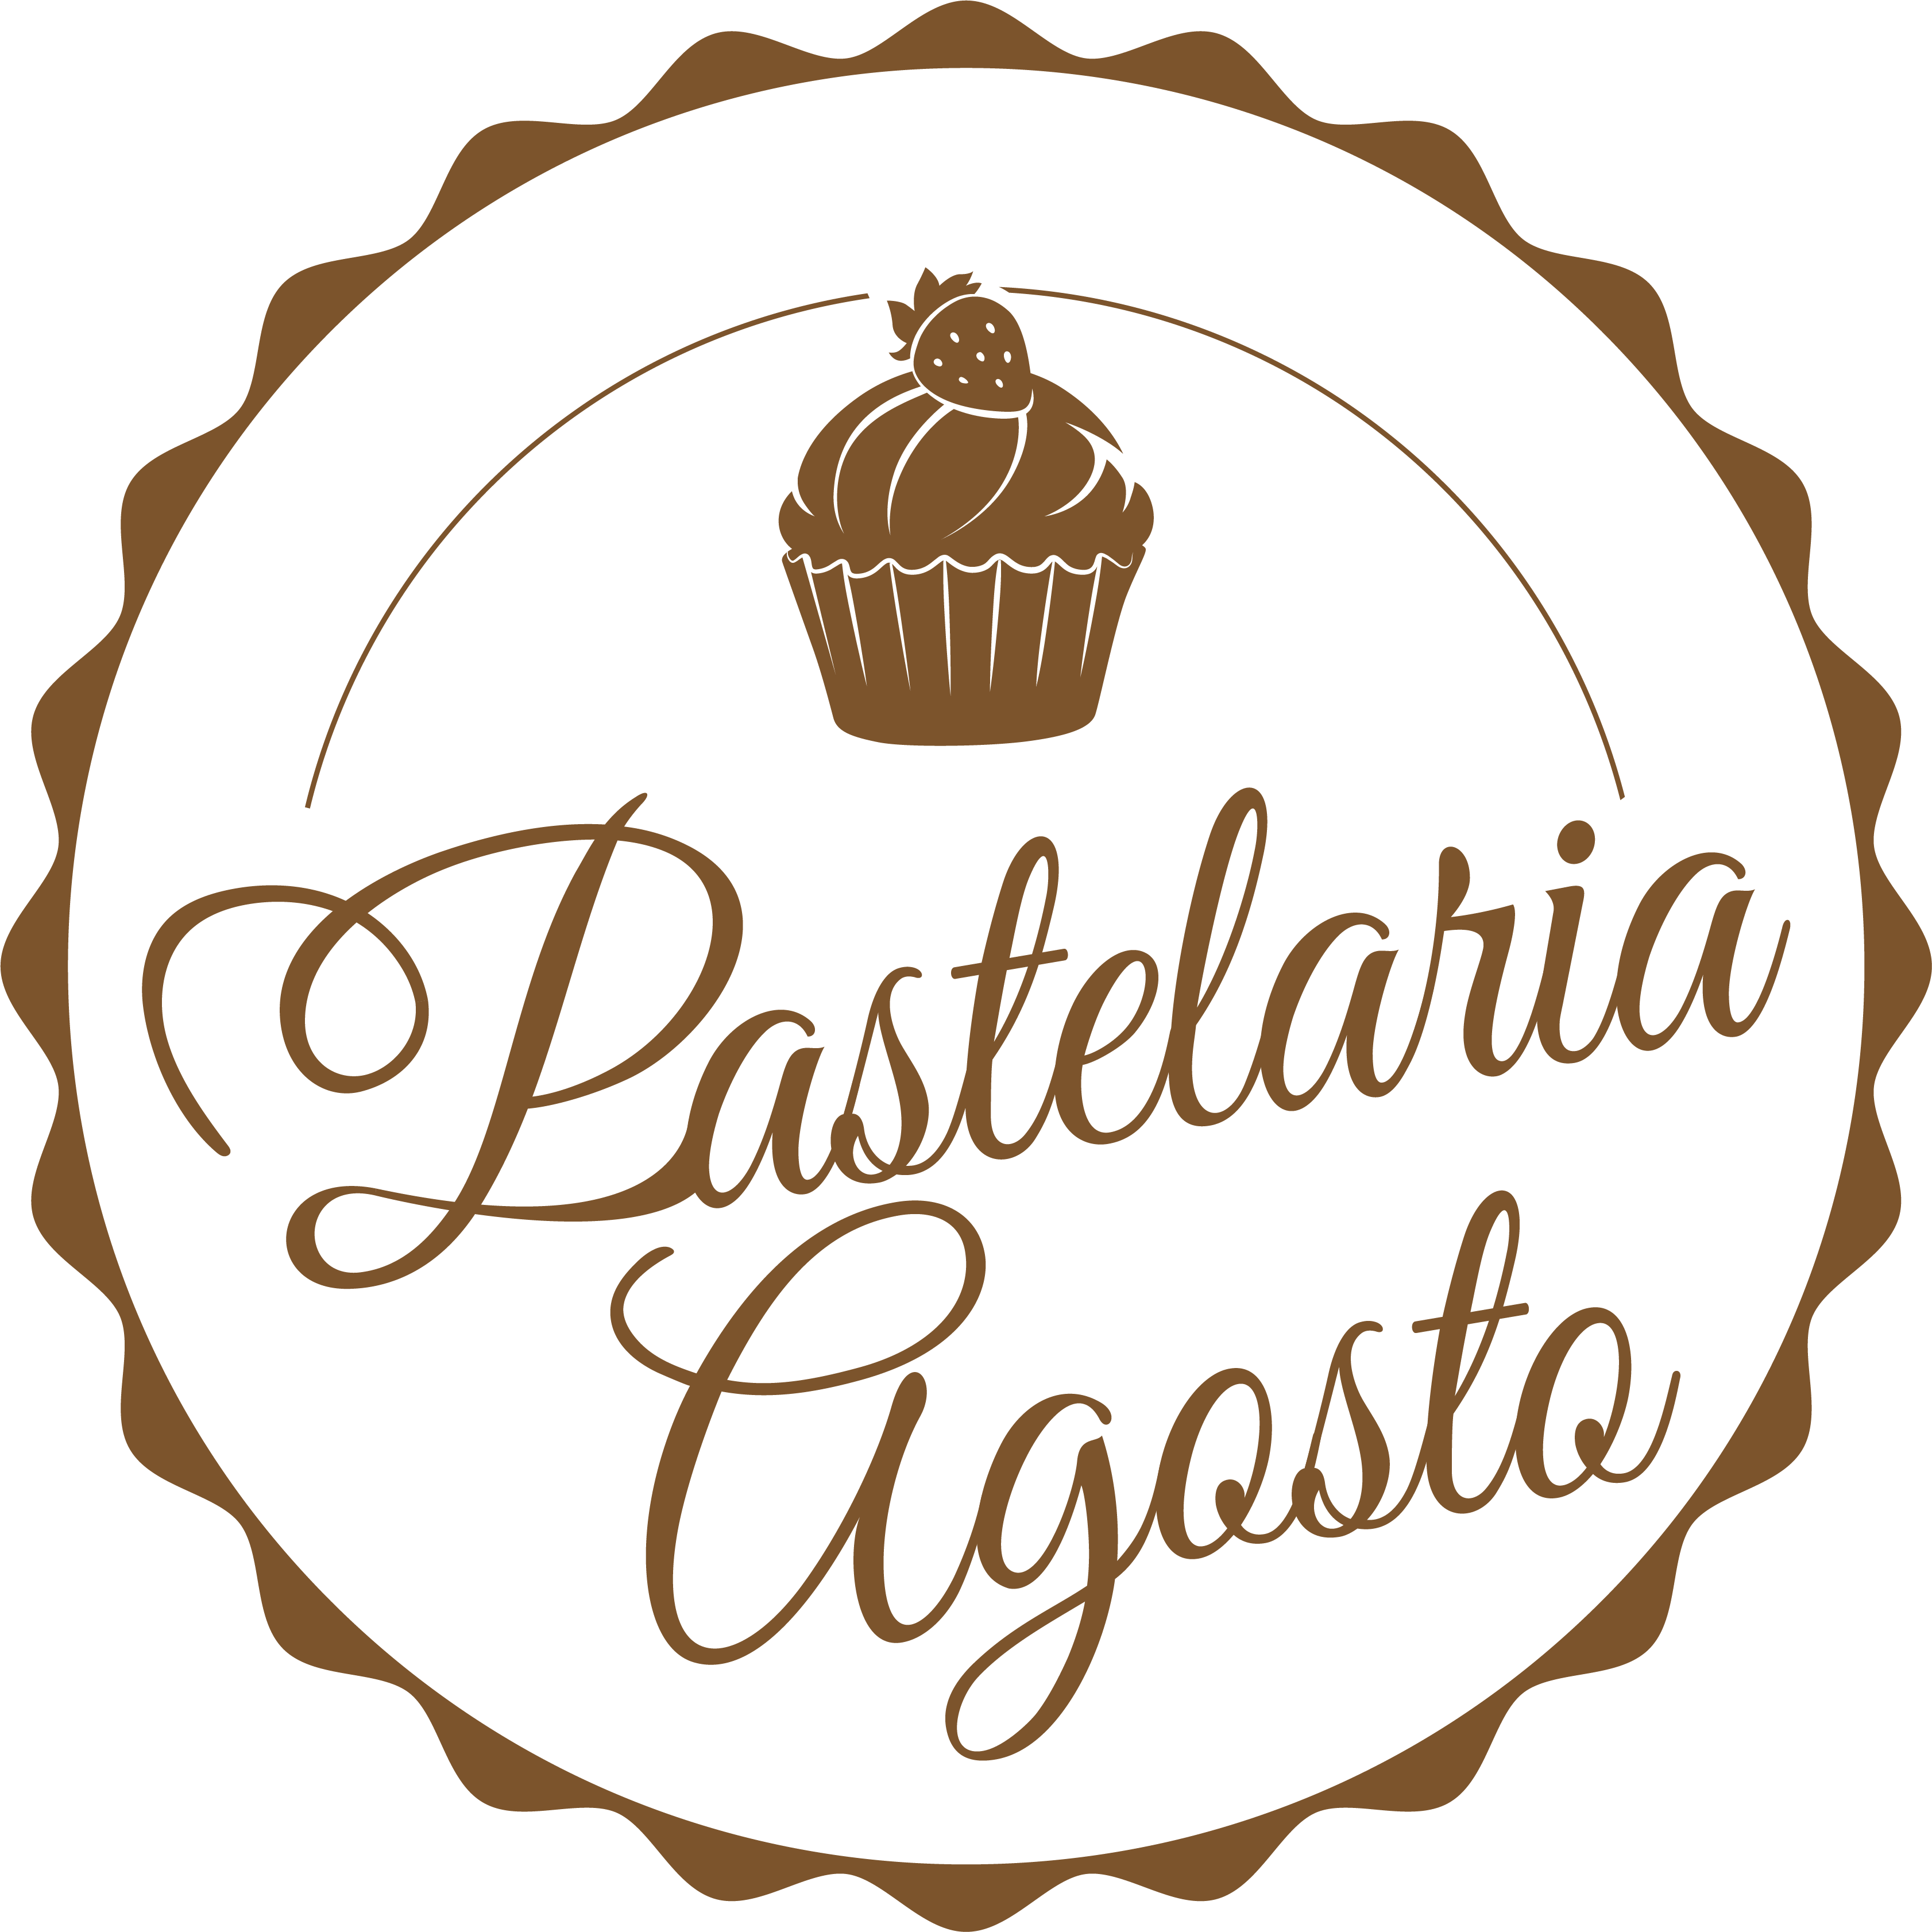 Pastelaria Agosto - Bäckerei & Konditorei Logo Official